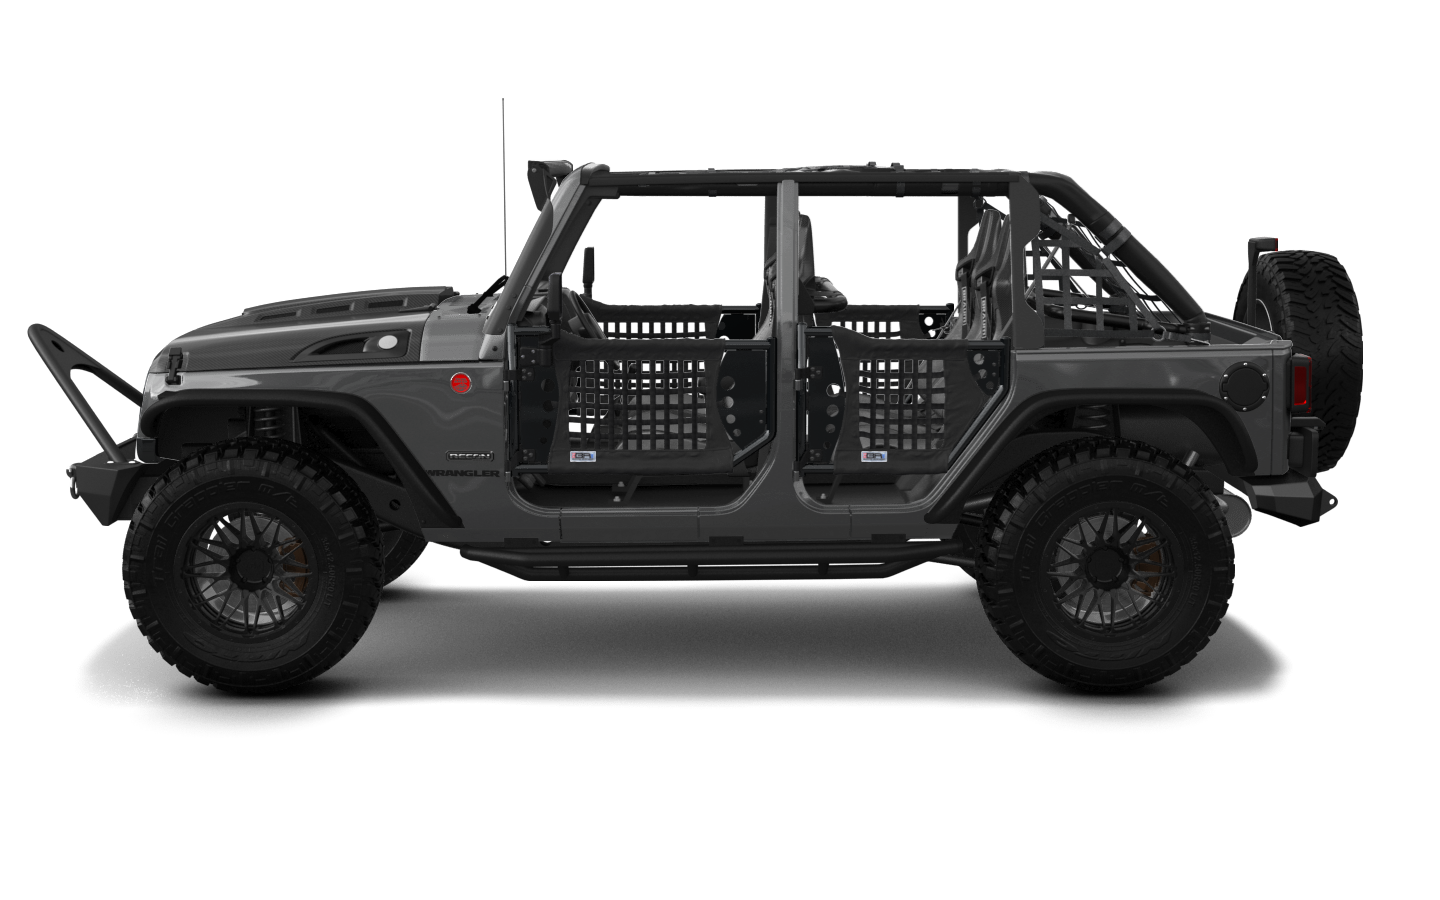 Jeep Wrangler Unlimited JK Rubicon Recon 4 Door SUV 2017